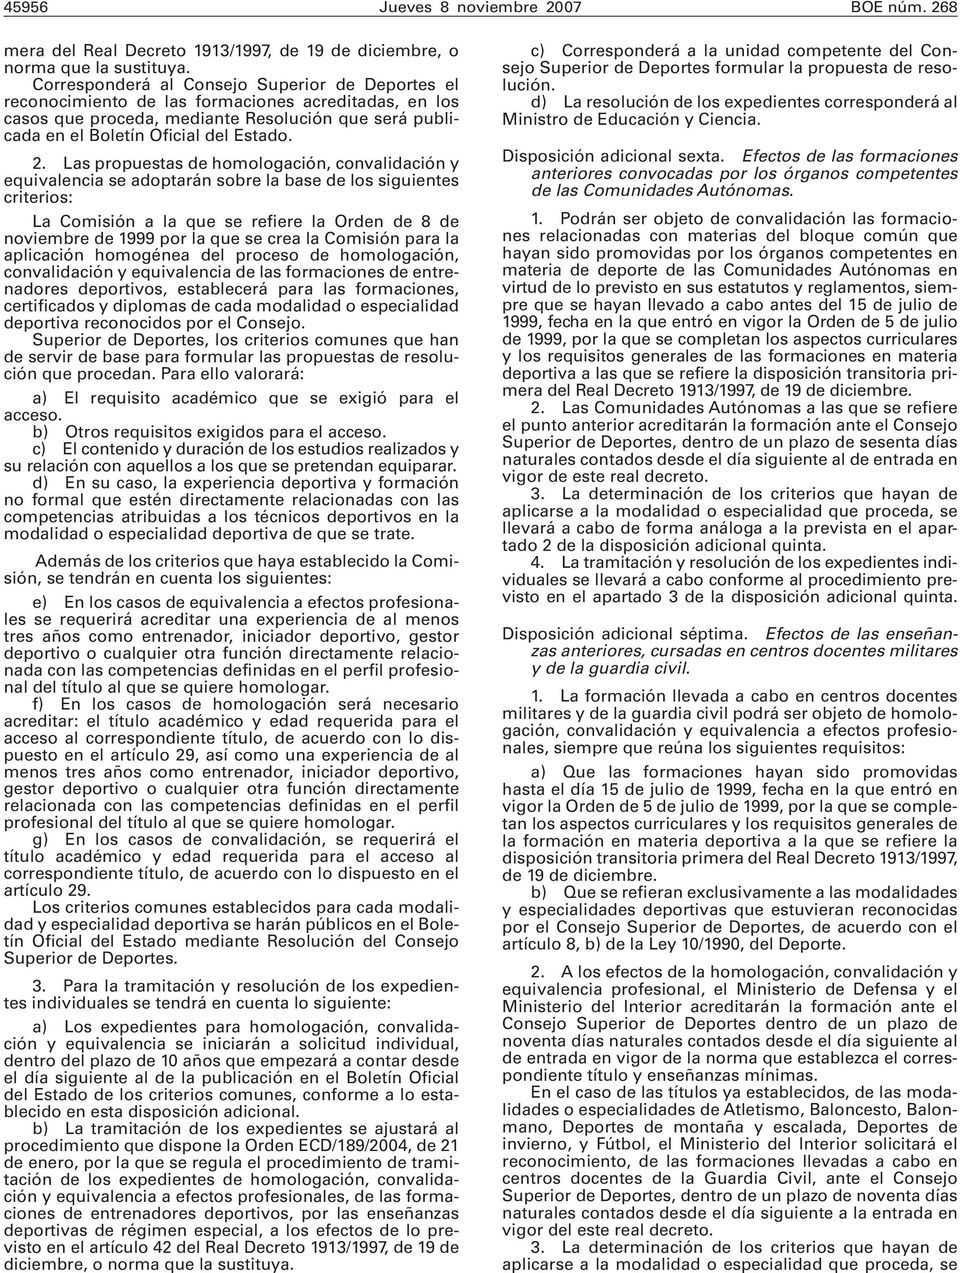 Las propuestas de homologación, convalidación y equivalencia se adoptarán sobre la base de los siguientes criterios: La Comisión a la que se refiere la Orden de 8 de noviembre de 1999 por la que se